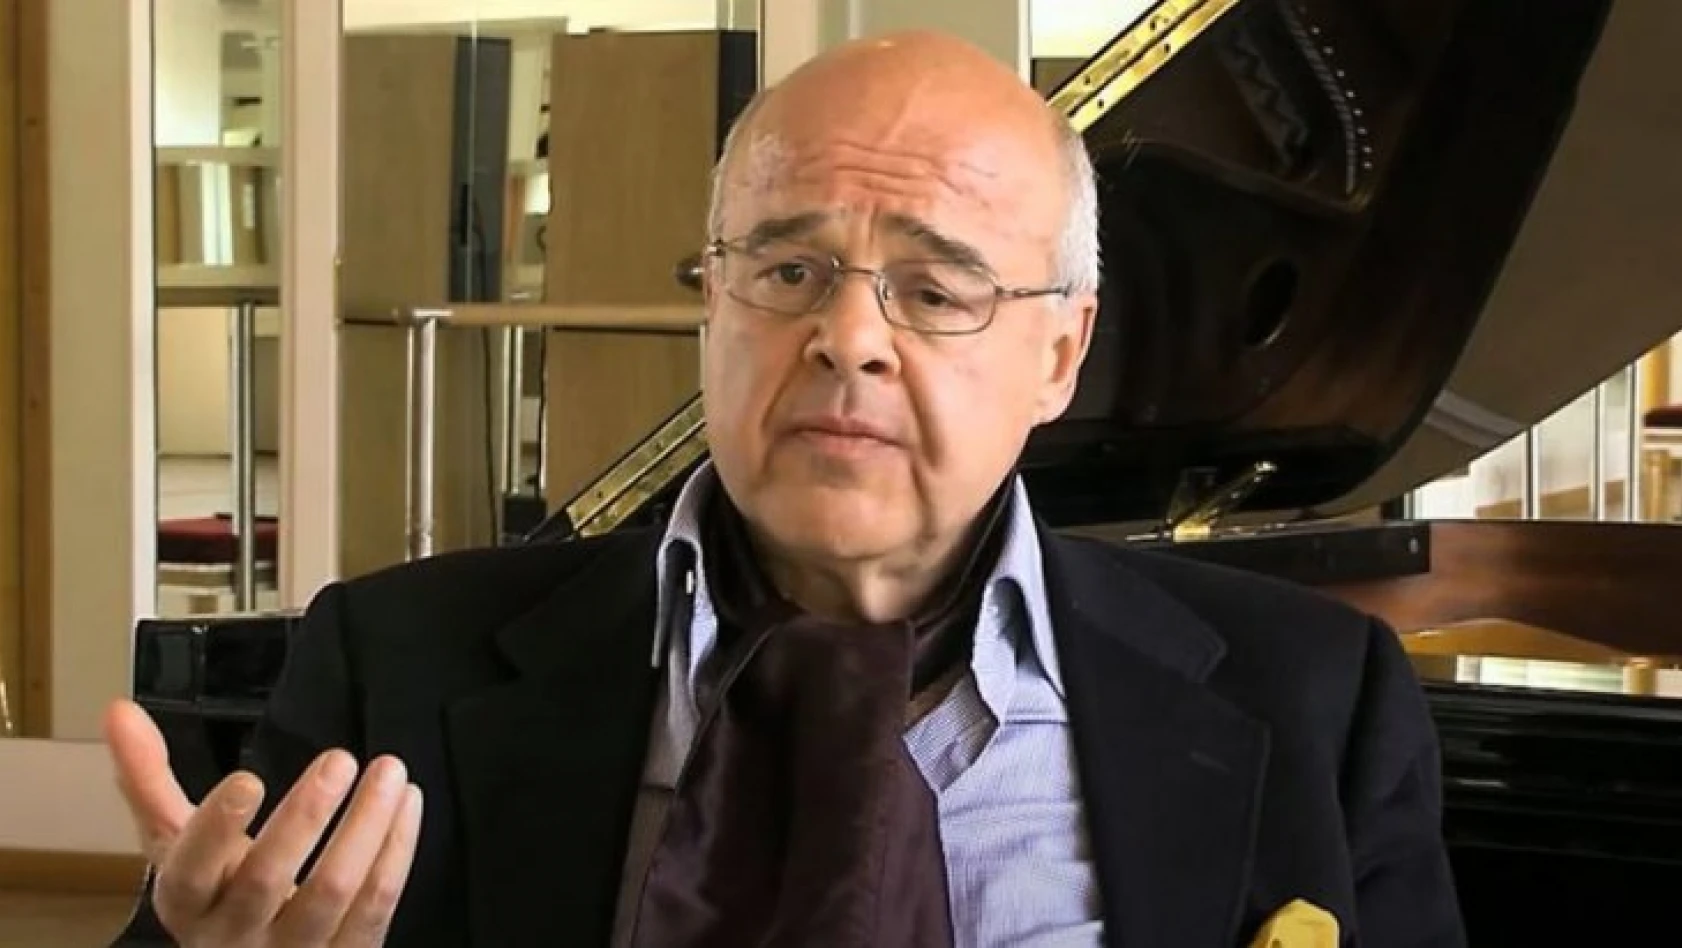 Gürcü piyanist Alexander Toradze, hayatını kaybetti